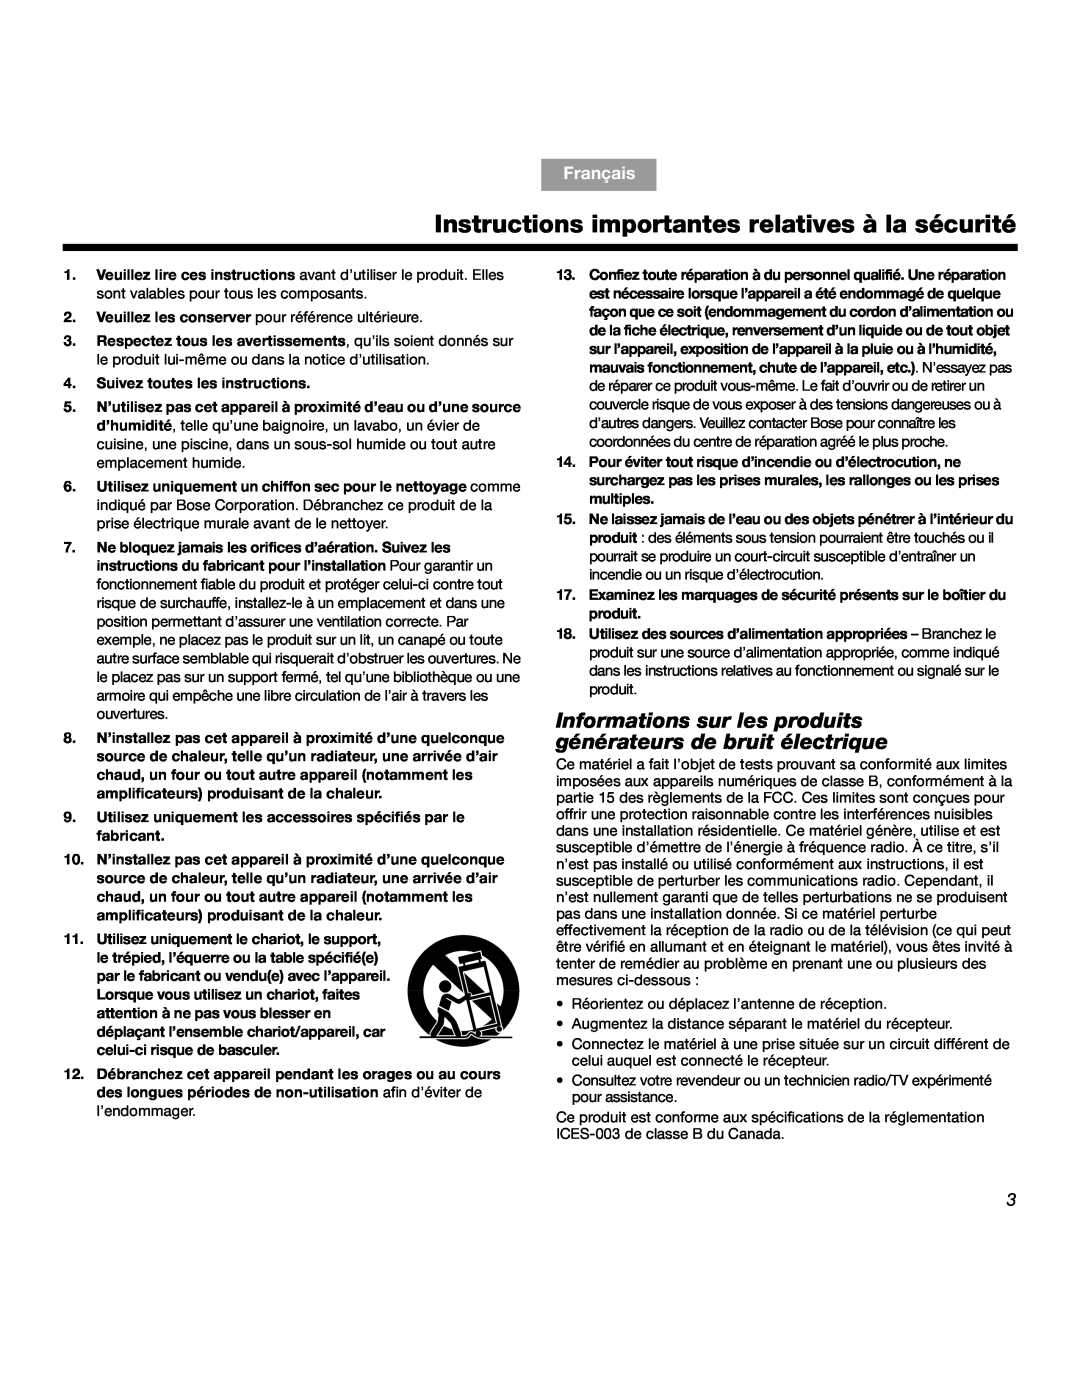 Bose SOUNDDOCKTM manual Instructions importantes relatives à la sécurité, Français 